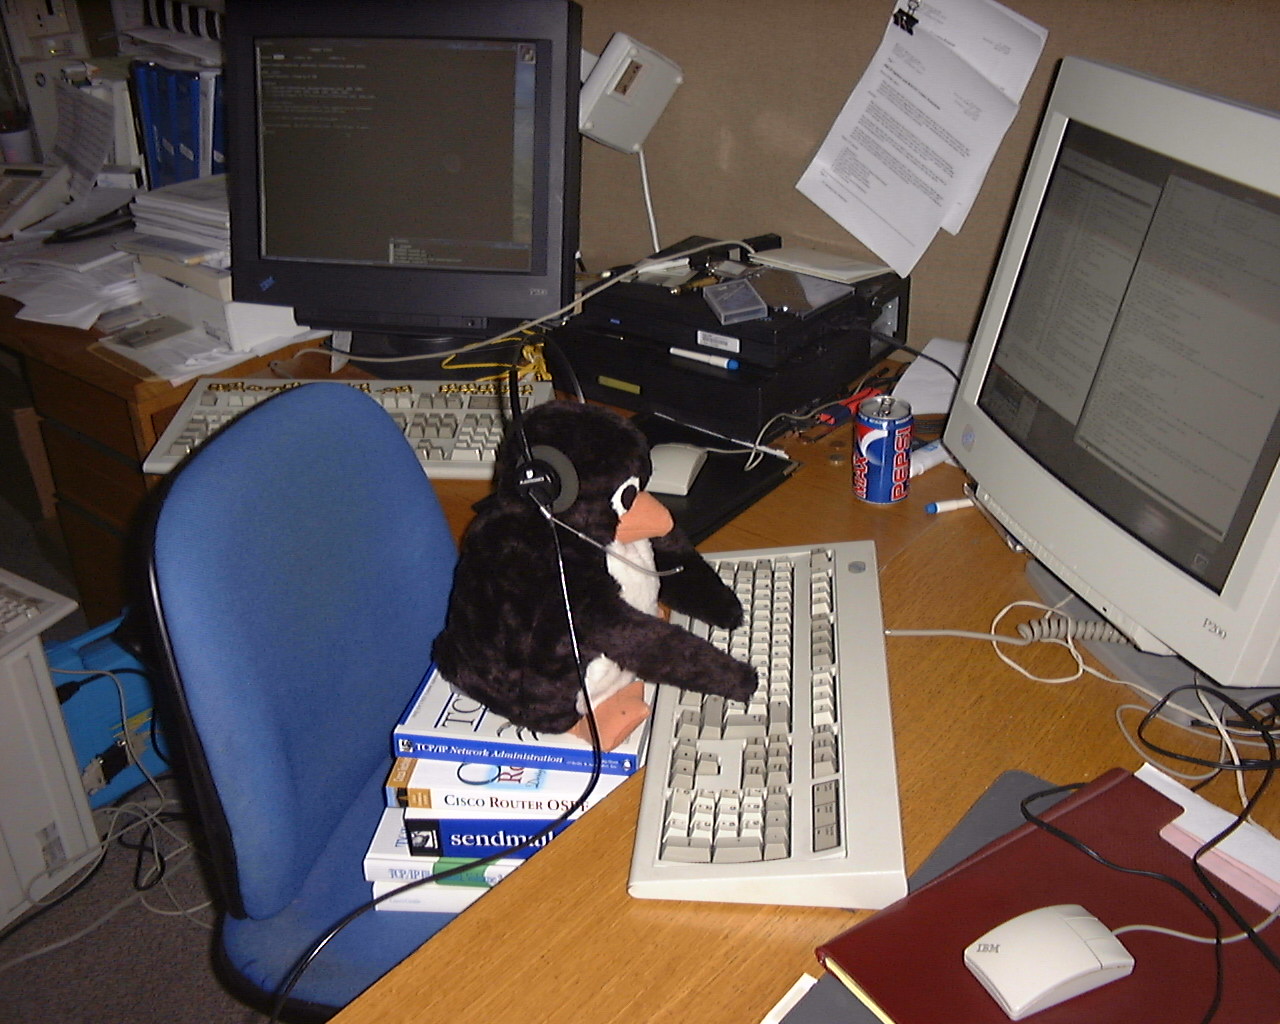 http://ftp.linux.org.uk/pub/linux/evil-penguin.jpg